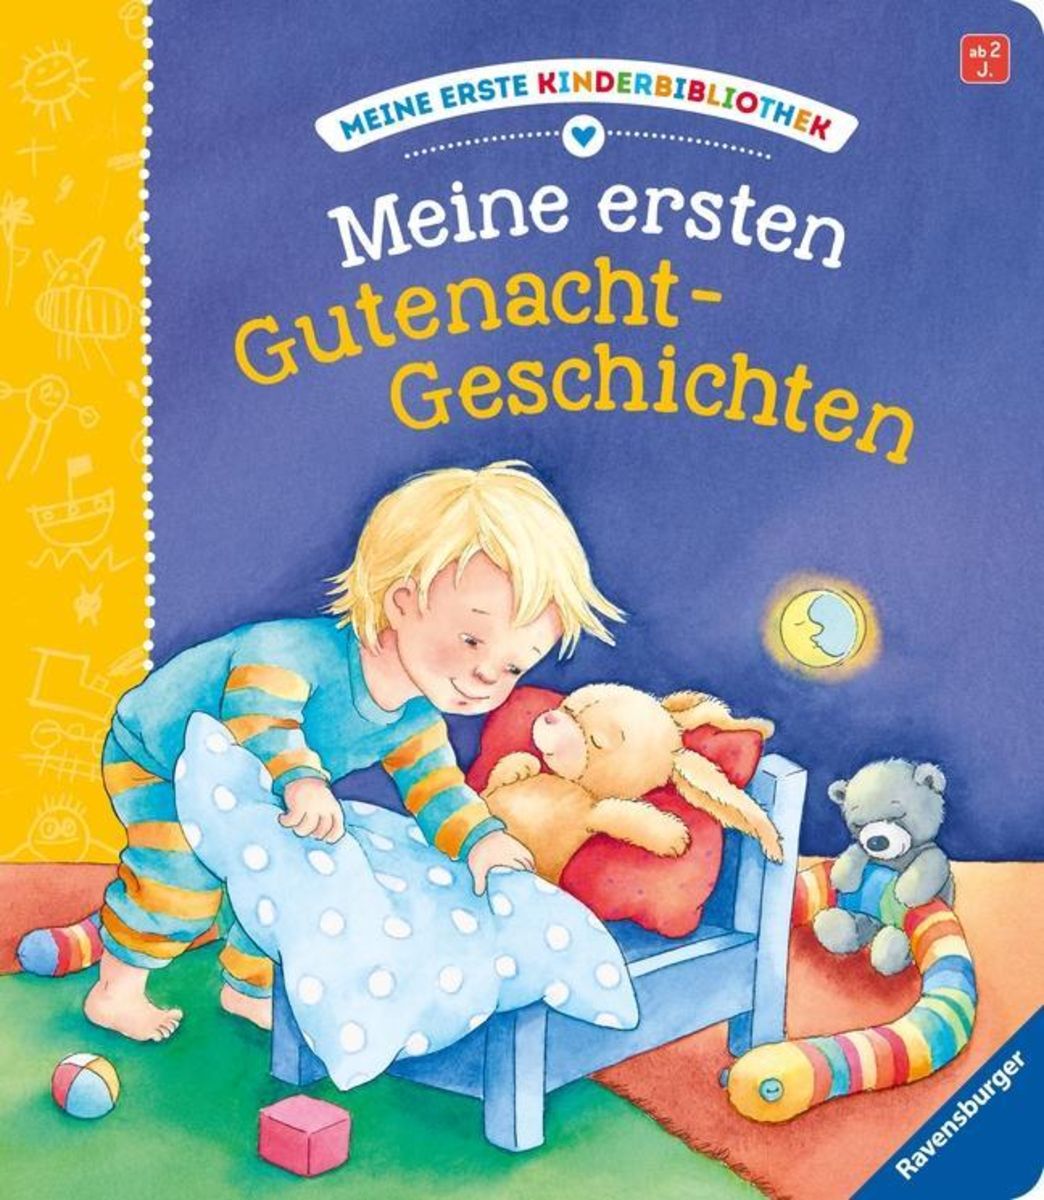 Pixi-Bücher Unterhaltung Bücher Kinder & junge Erwachsene Babys & Kleinkinder 